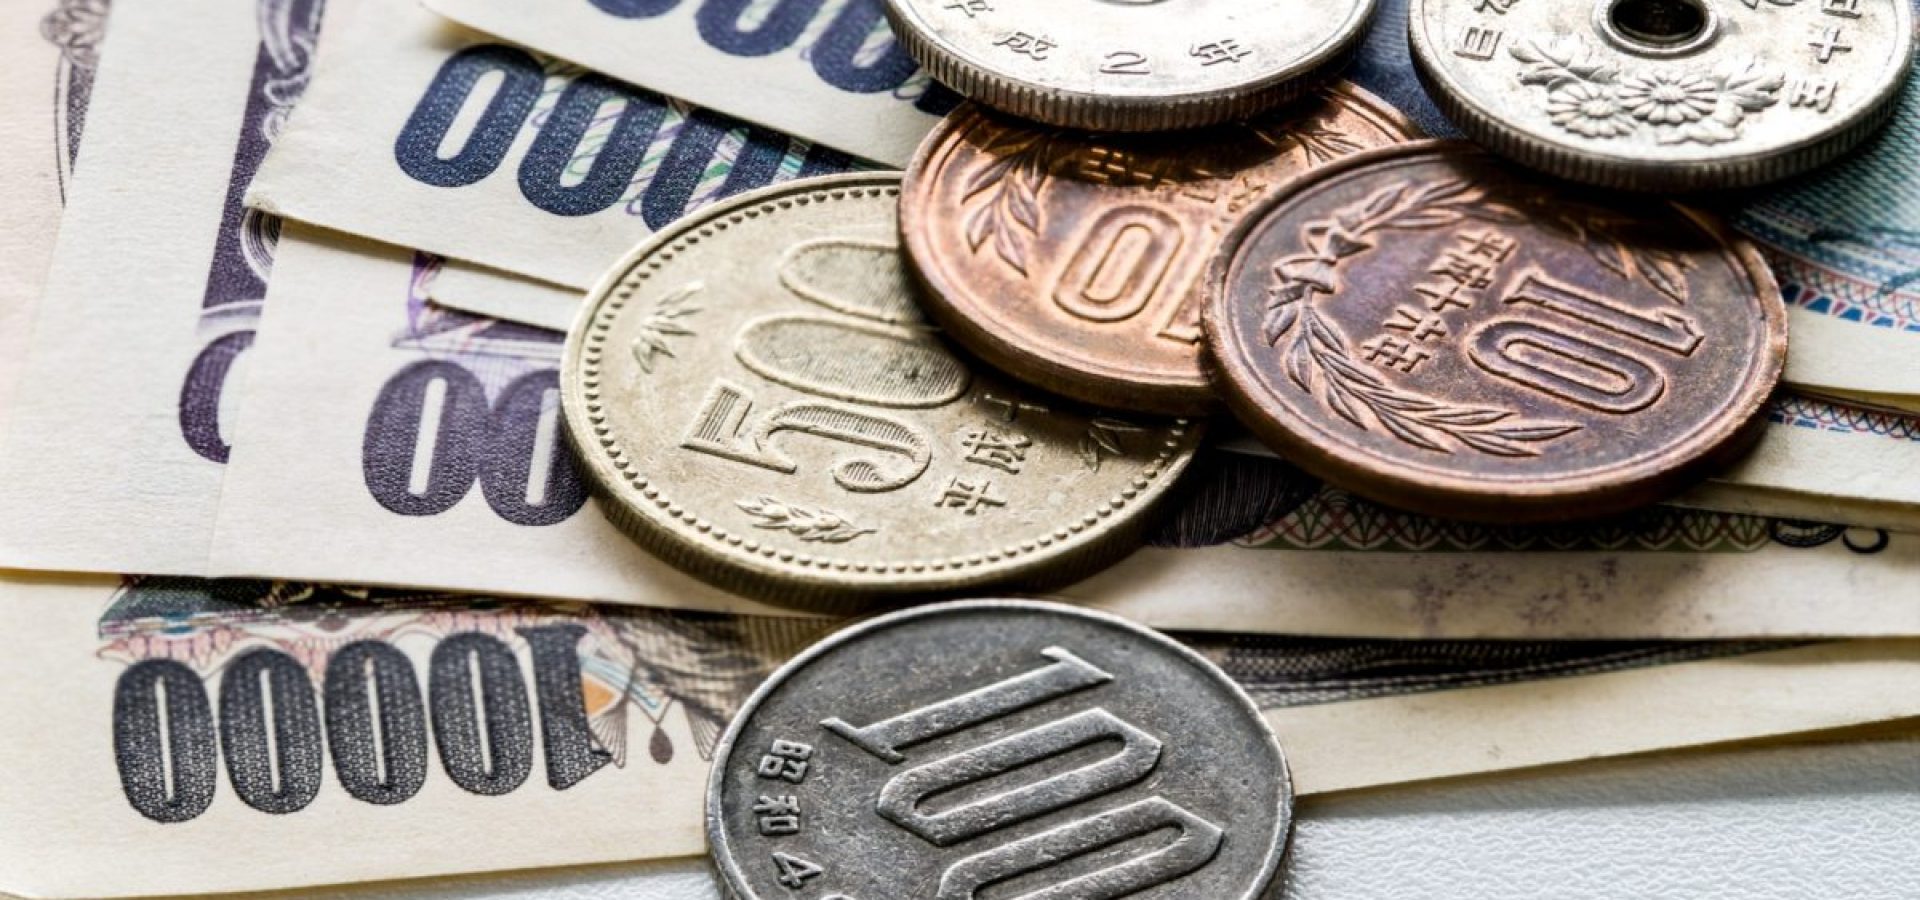 Japanese Yen fell against the U.S. dollar on Thursday